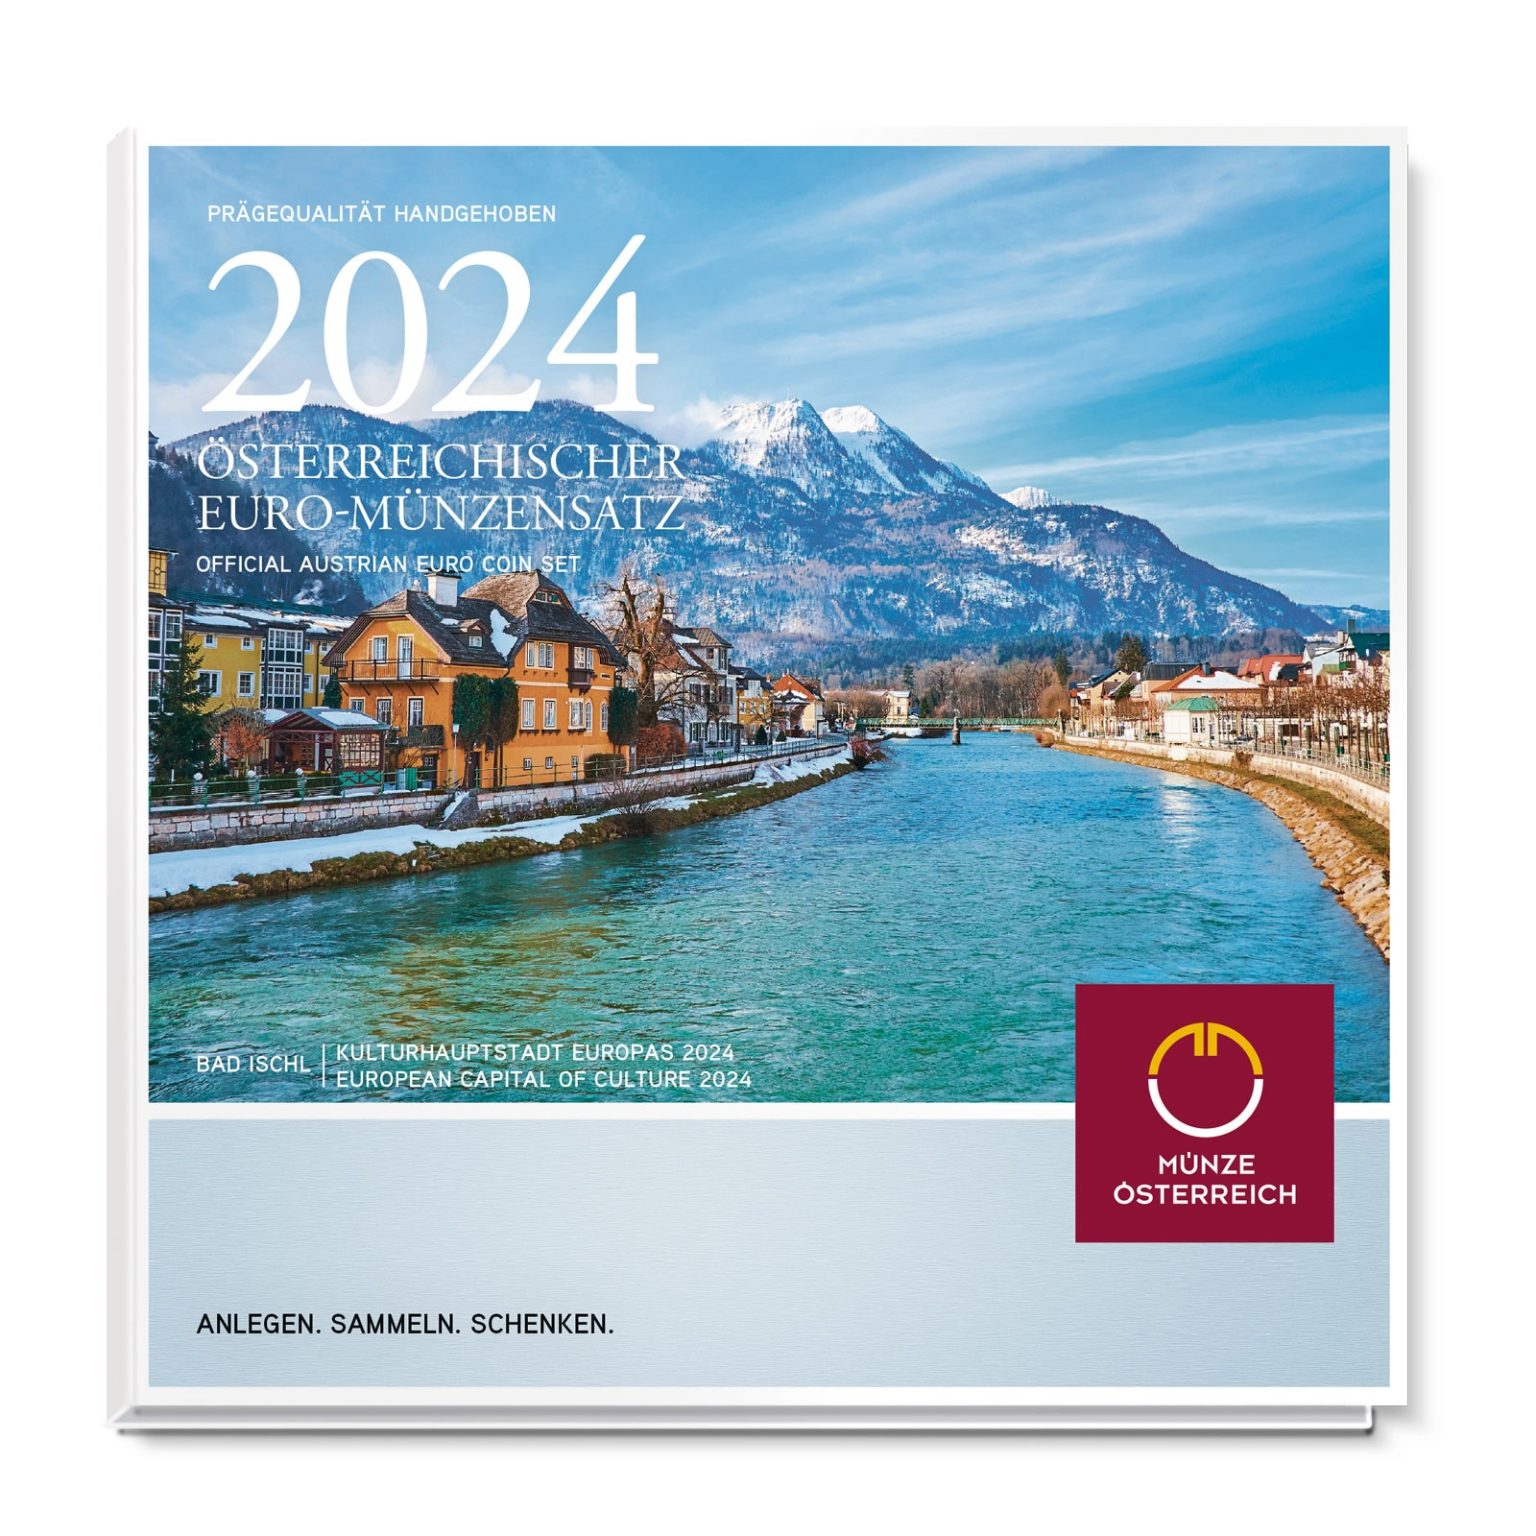 Coffret BU Autriche 2024 (Bad Ischl, capitale européenne de la culture